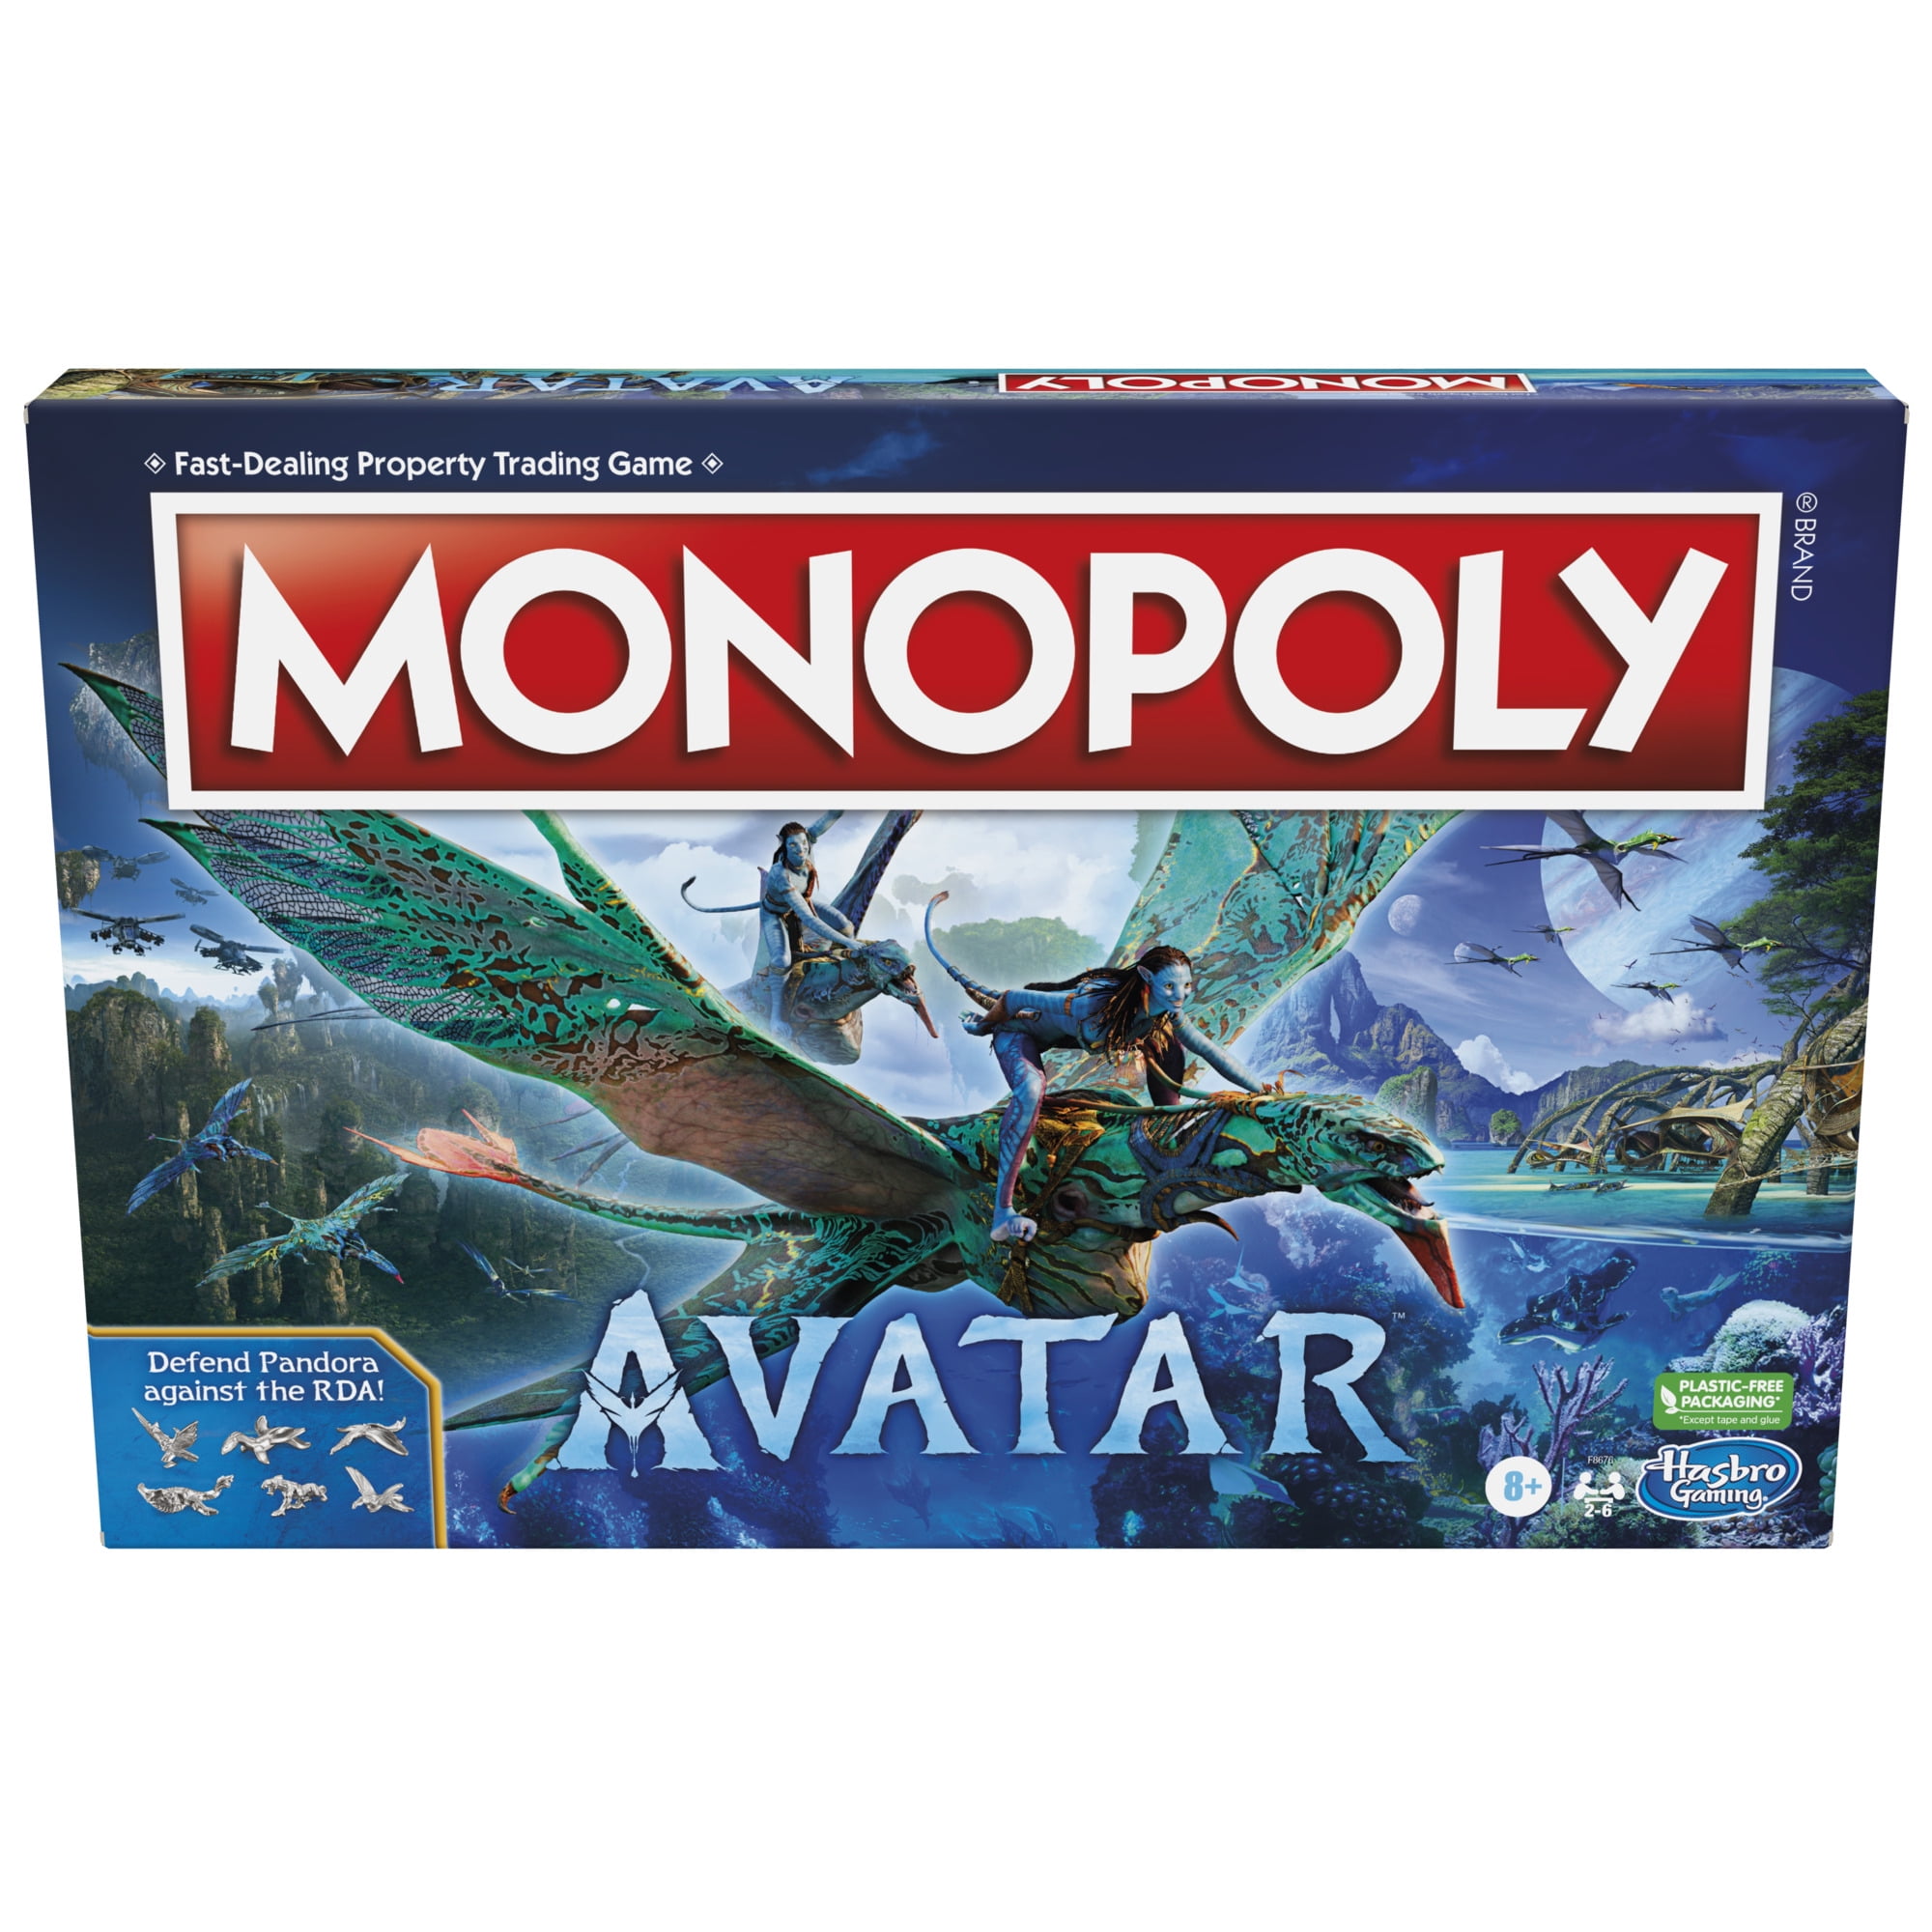 Trò chơi bàn Avatar phiên bản Monopoly dành cho 2-6 người chơi sẽ khiến bạn và bạn bè thích thú với những lượt đi đầy kịch tính, những cuộc đấu giành tài sản và cơ hội để trở thành tỷ phú. Hãy cùng xem hình ảnh liên quan để cảm nhận sự hấp dẫn của trò chơi này.